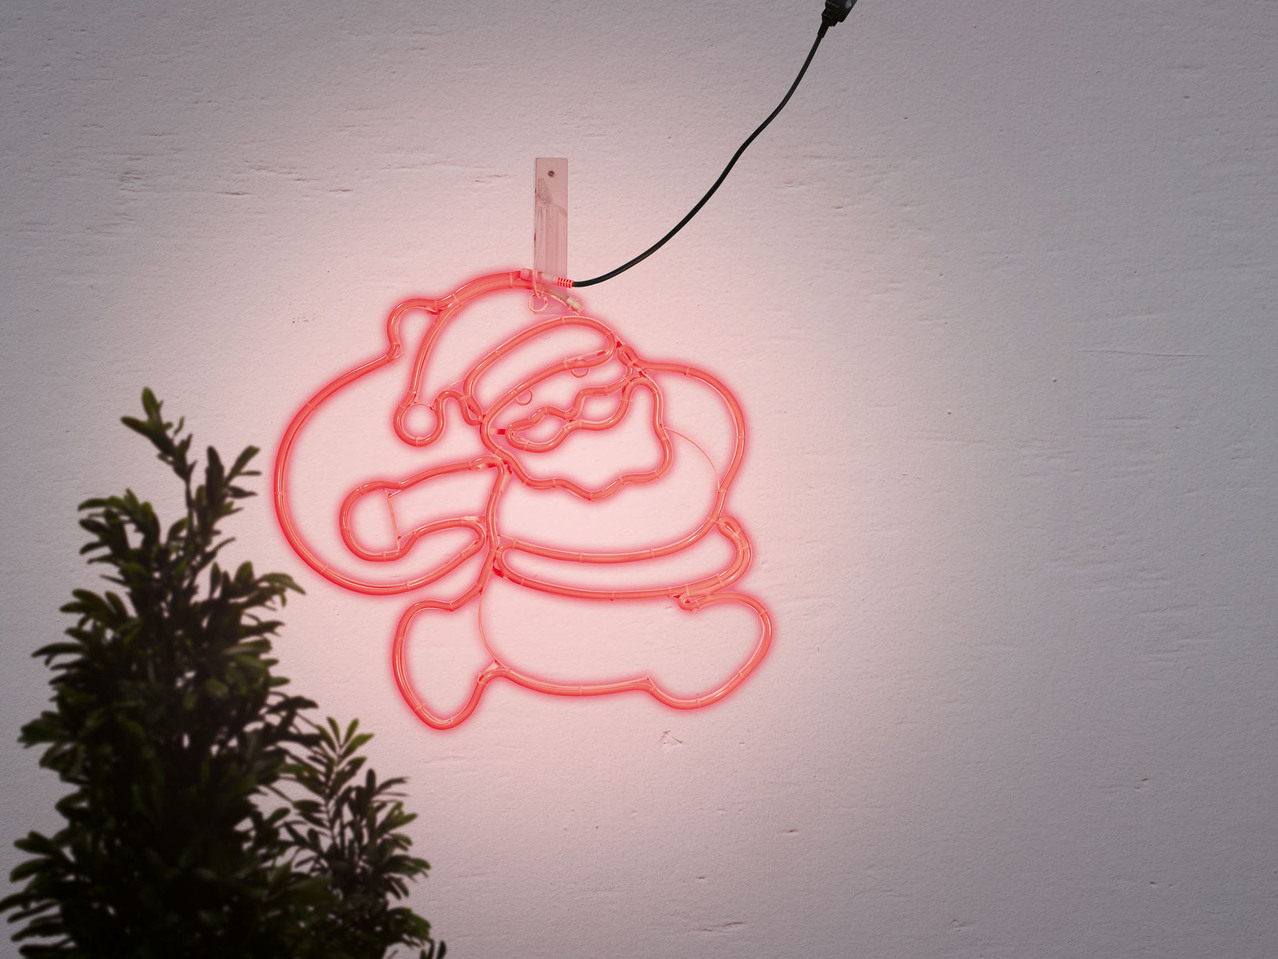 LED Rope Light Figure